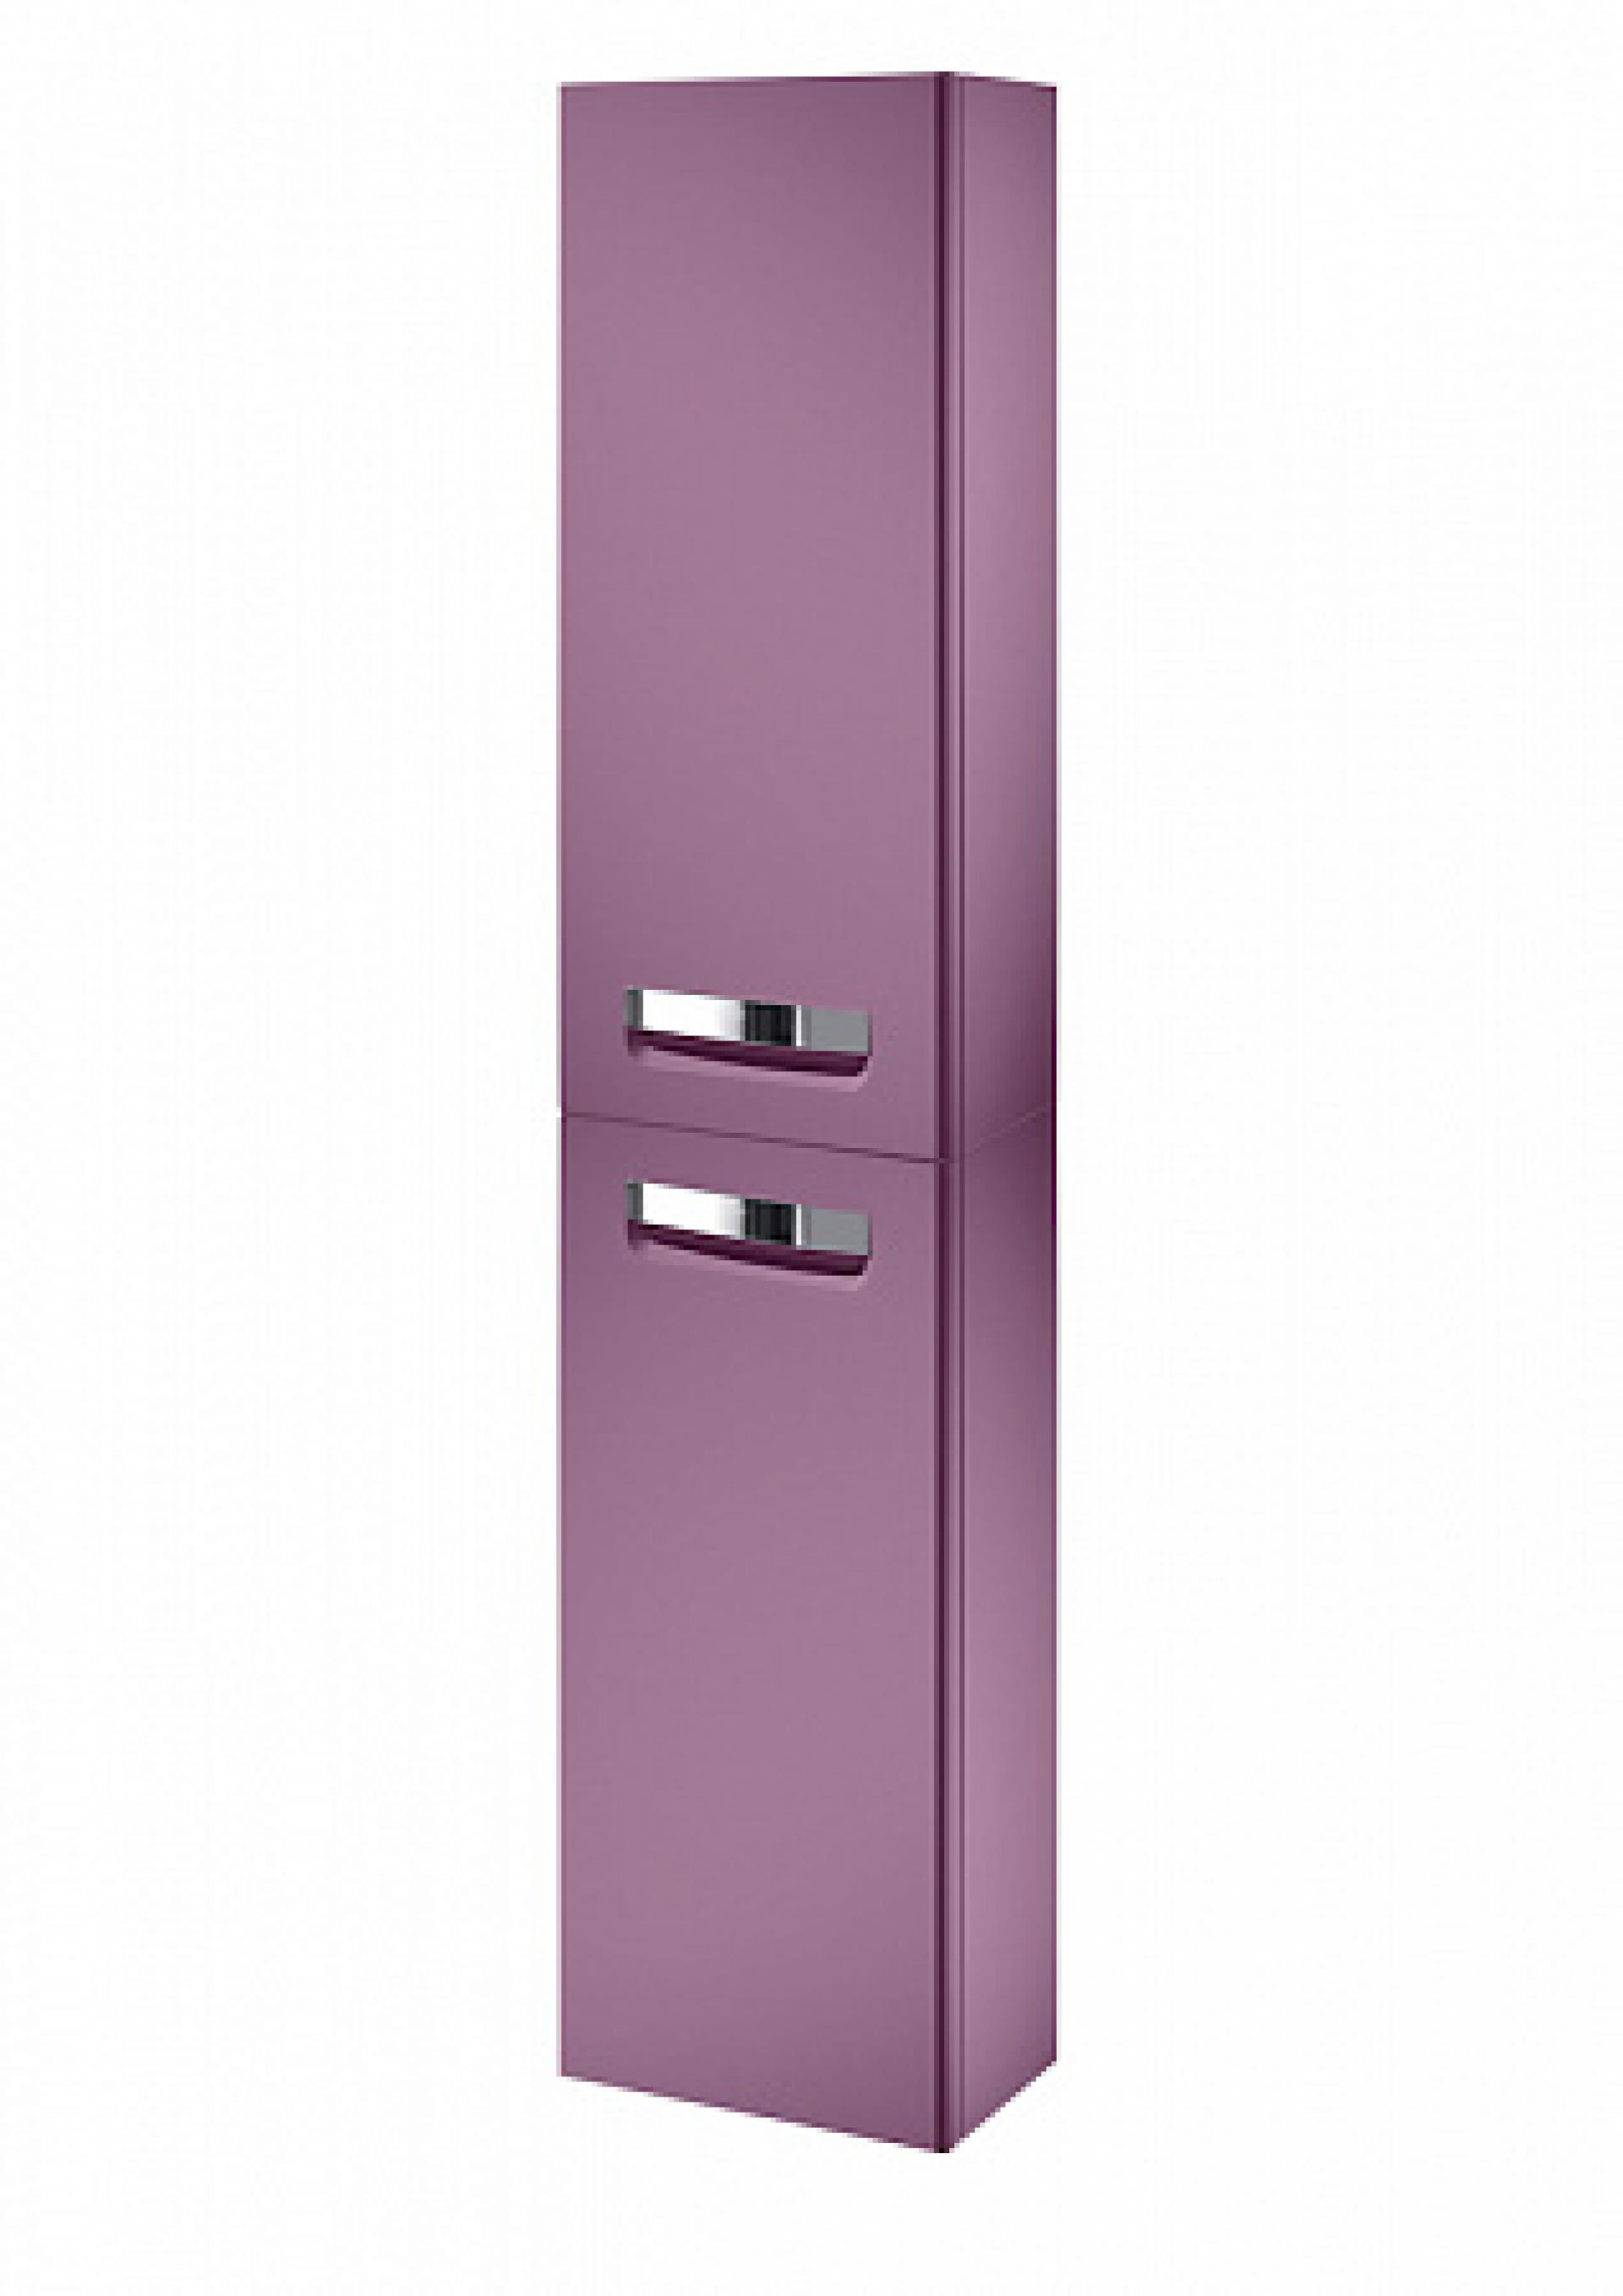 Фото: Комплект мебели 70 см Roca Gap фиолетовый, с подсветкой + шкаф-пенал правый Roca в каталоге